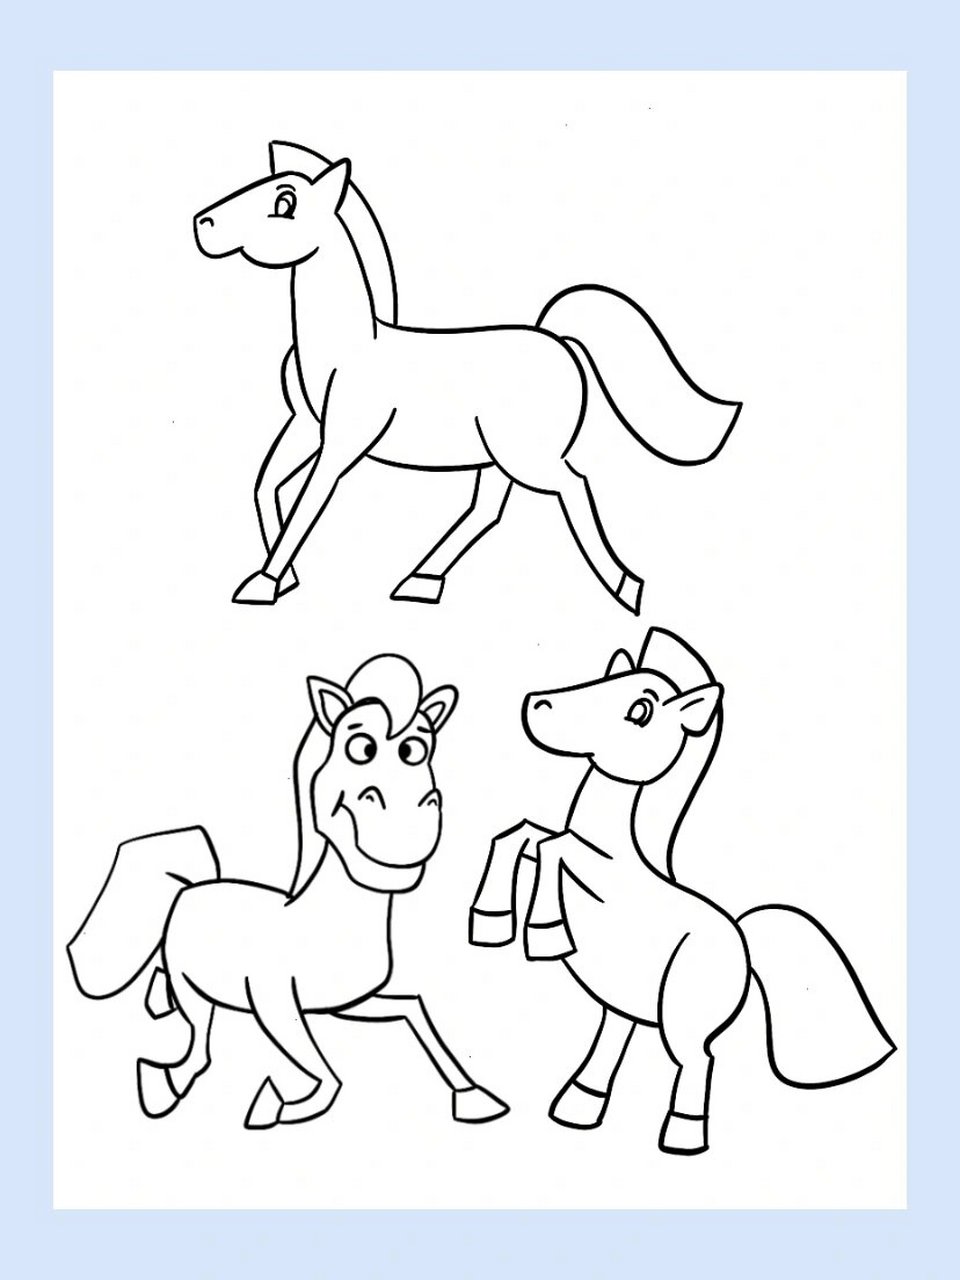 两匹马的简笔画图片